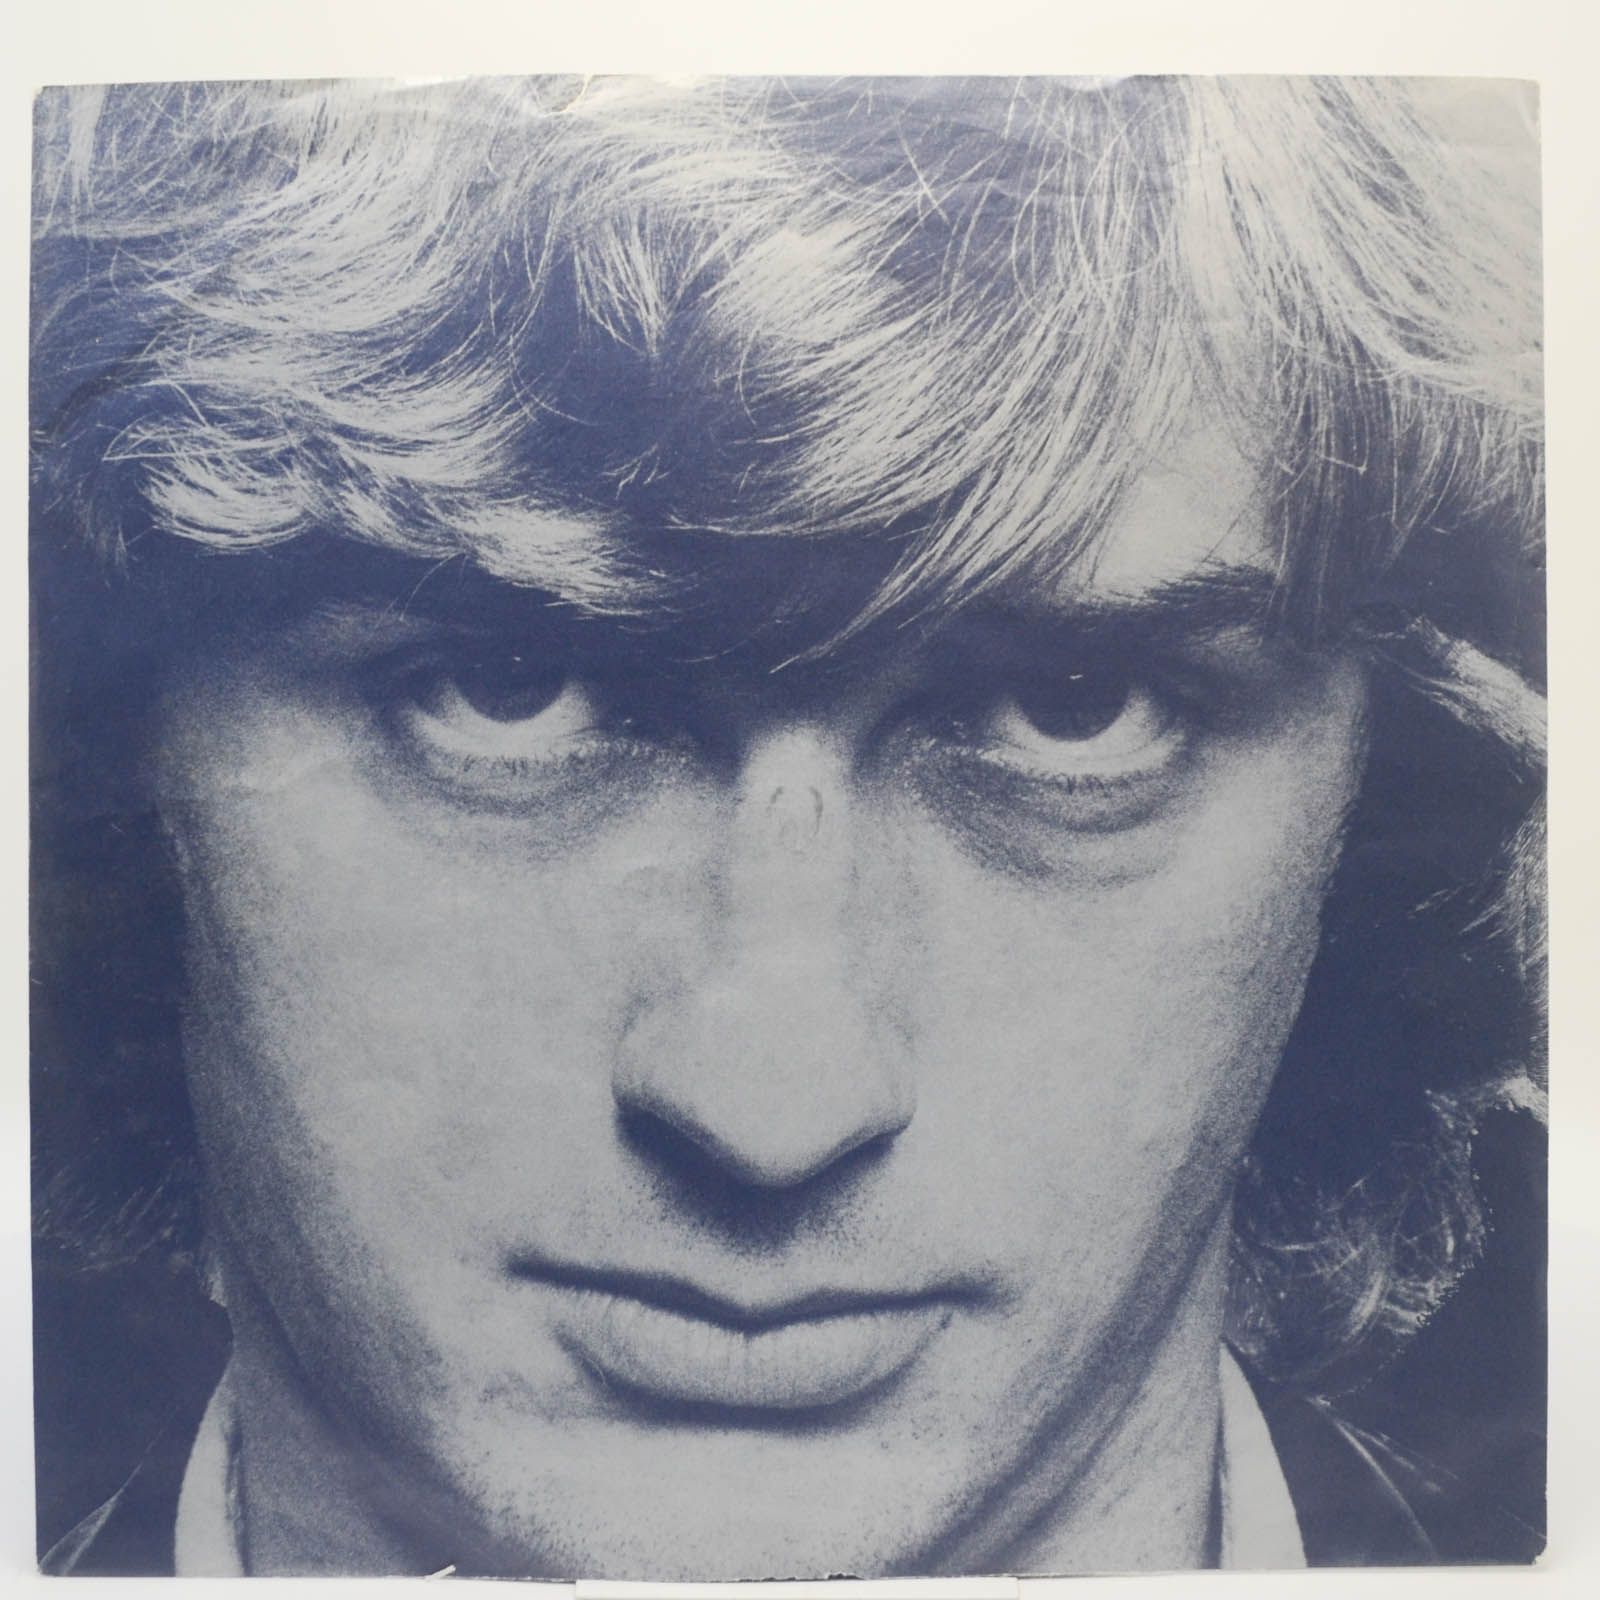 Mike Oldfield — Platinum, 1979